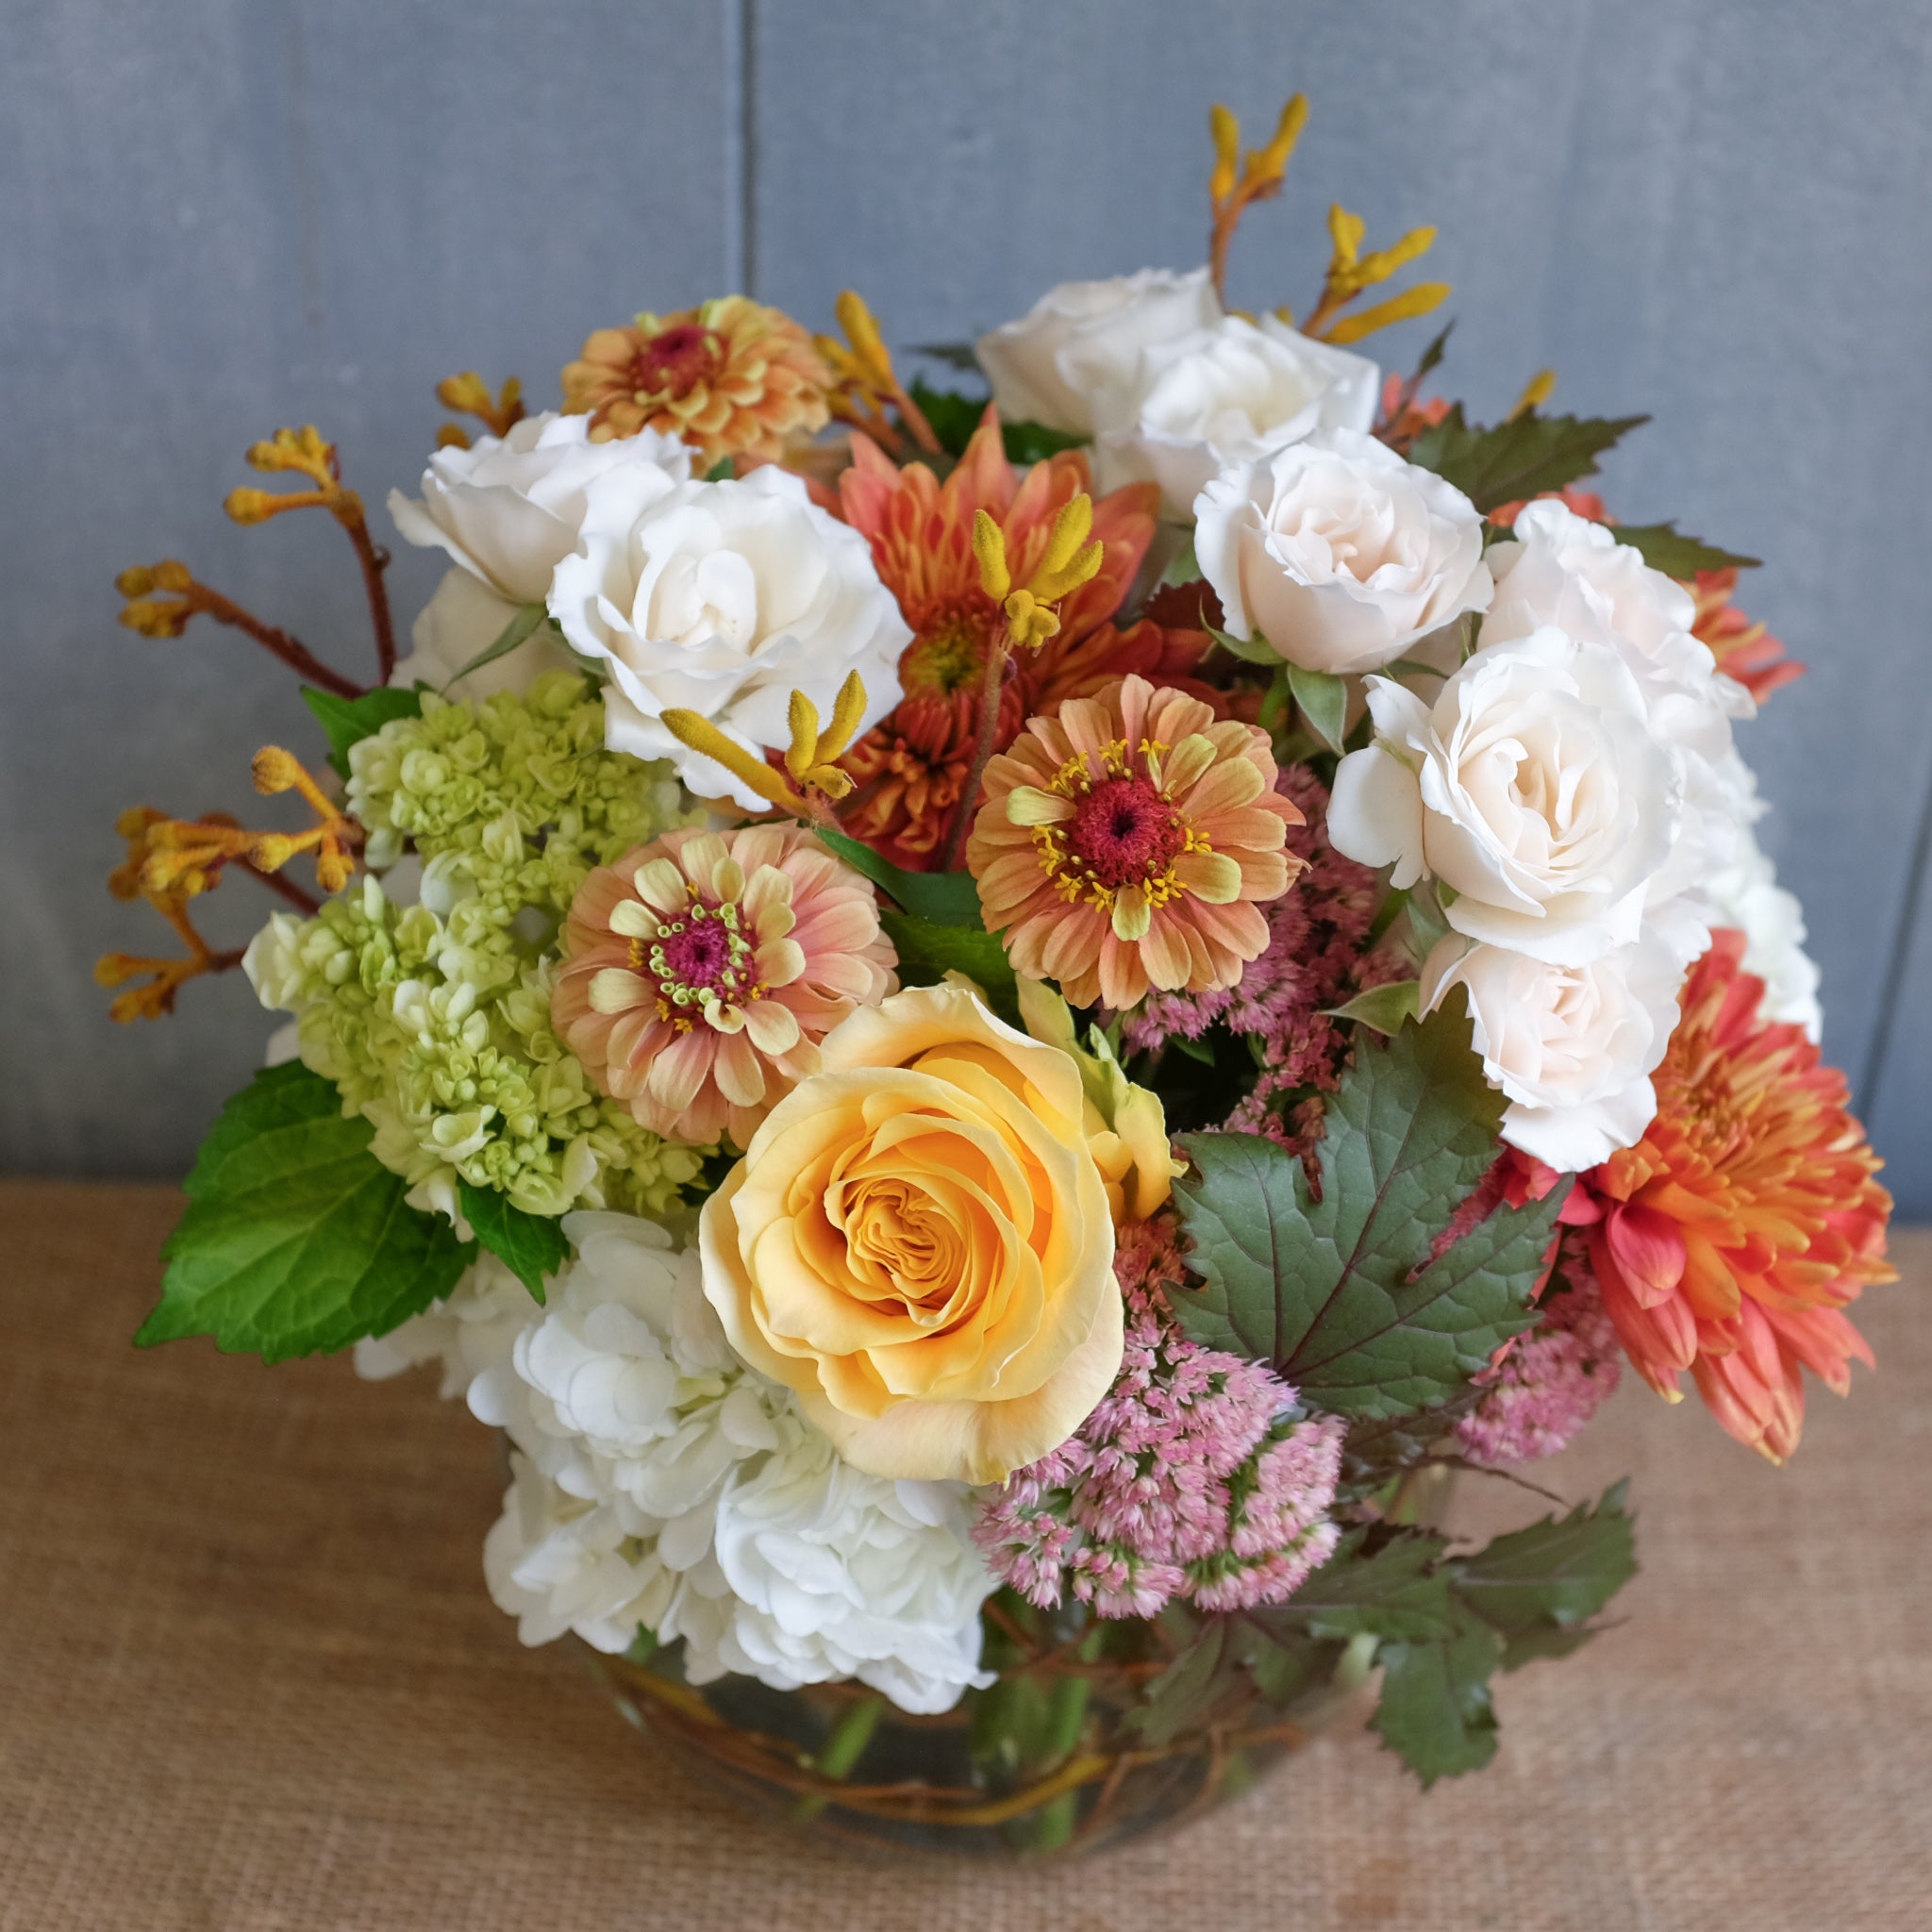 Flower bouquet by Michlers Florist, Lexington KY.